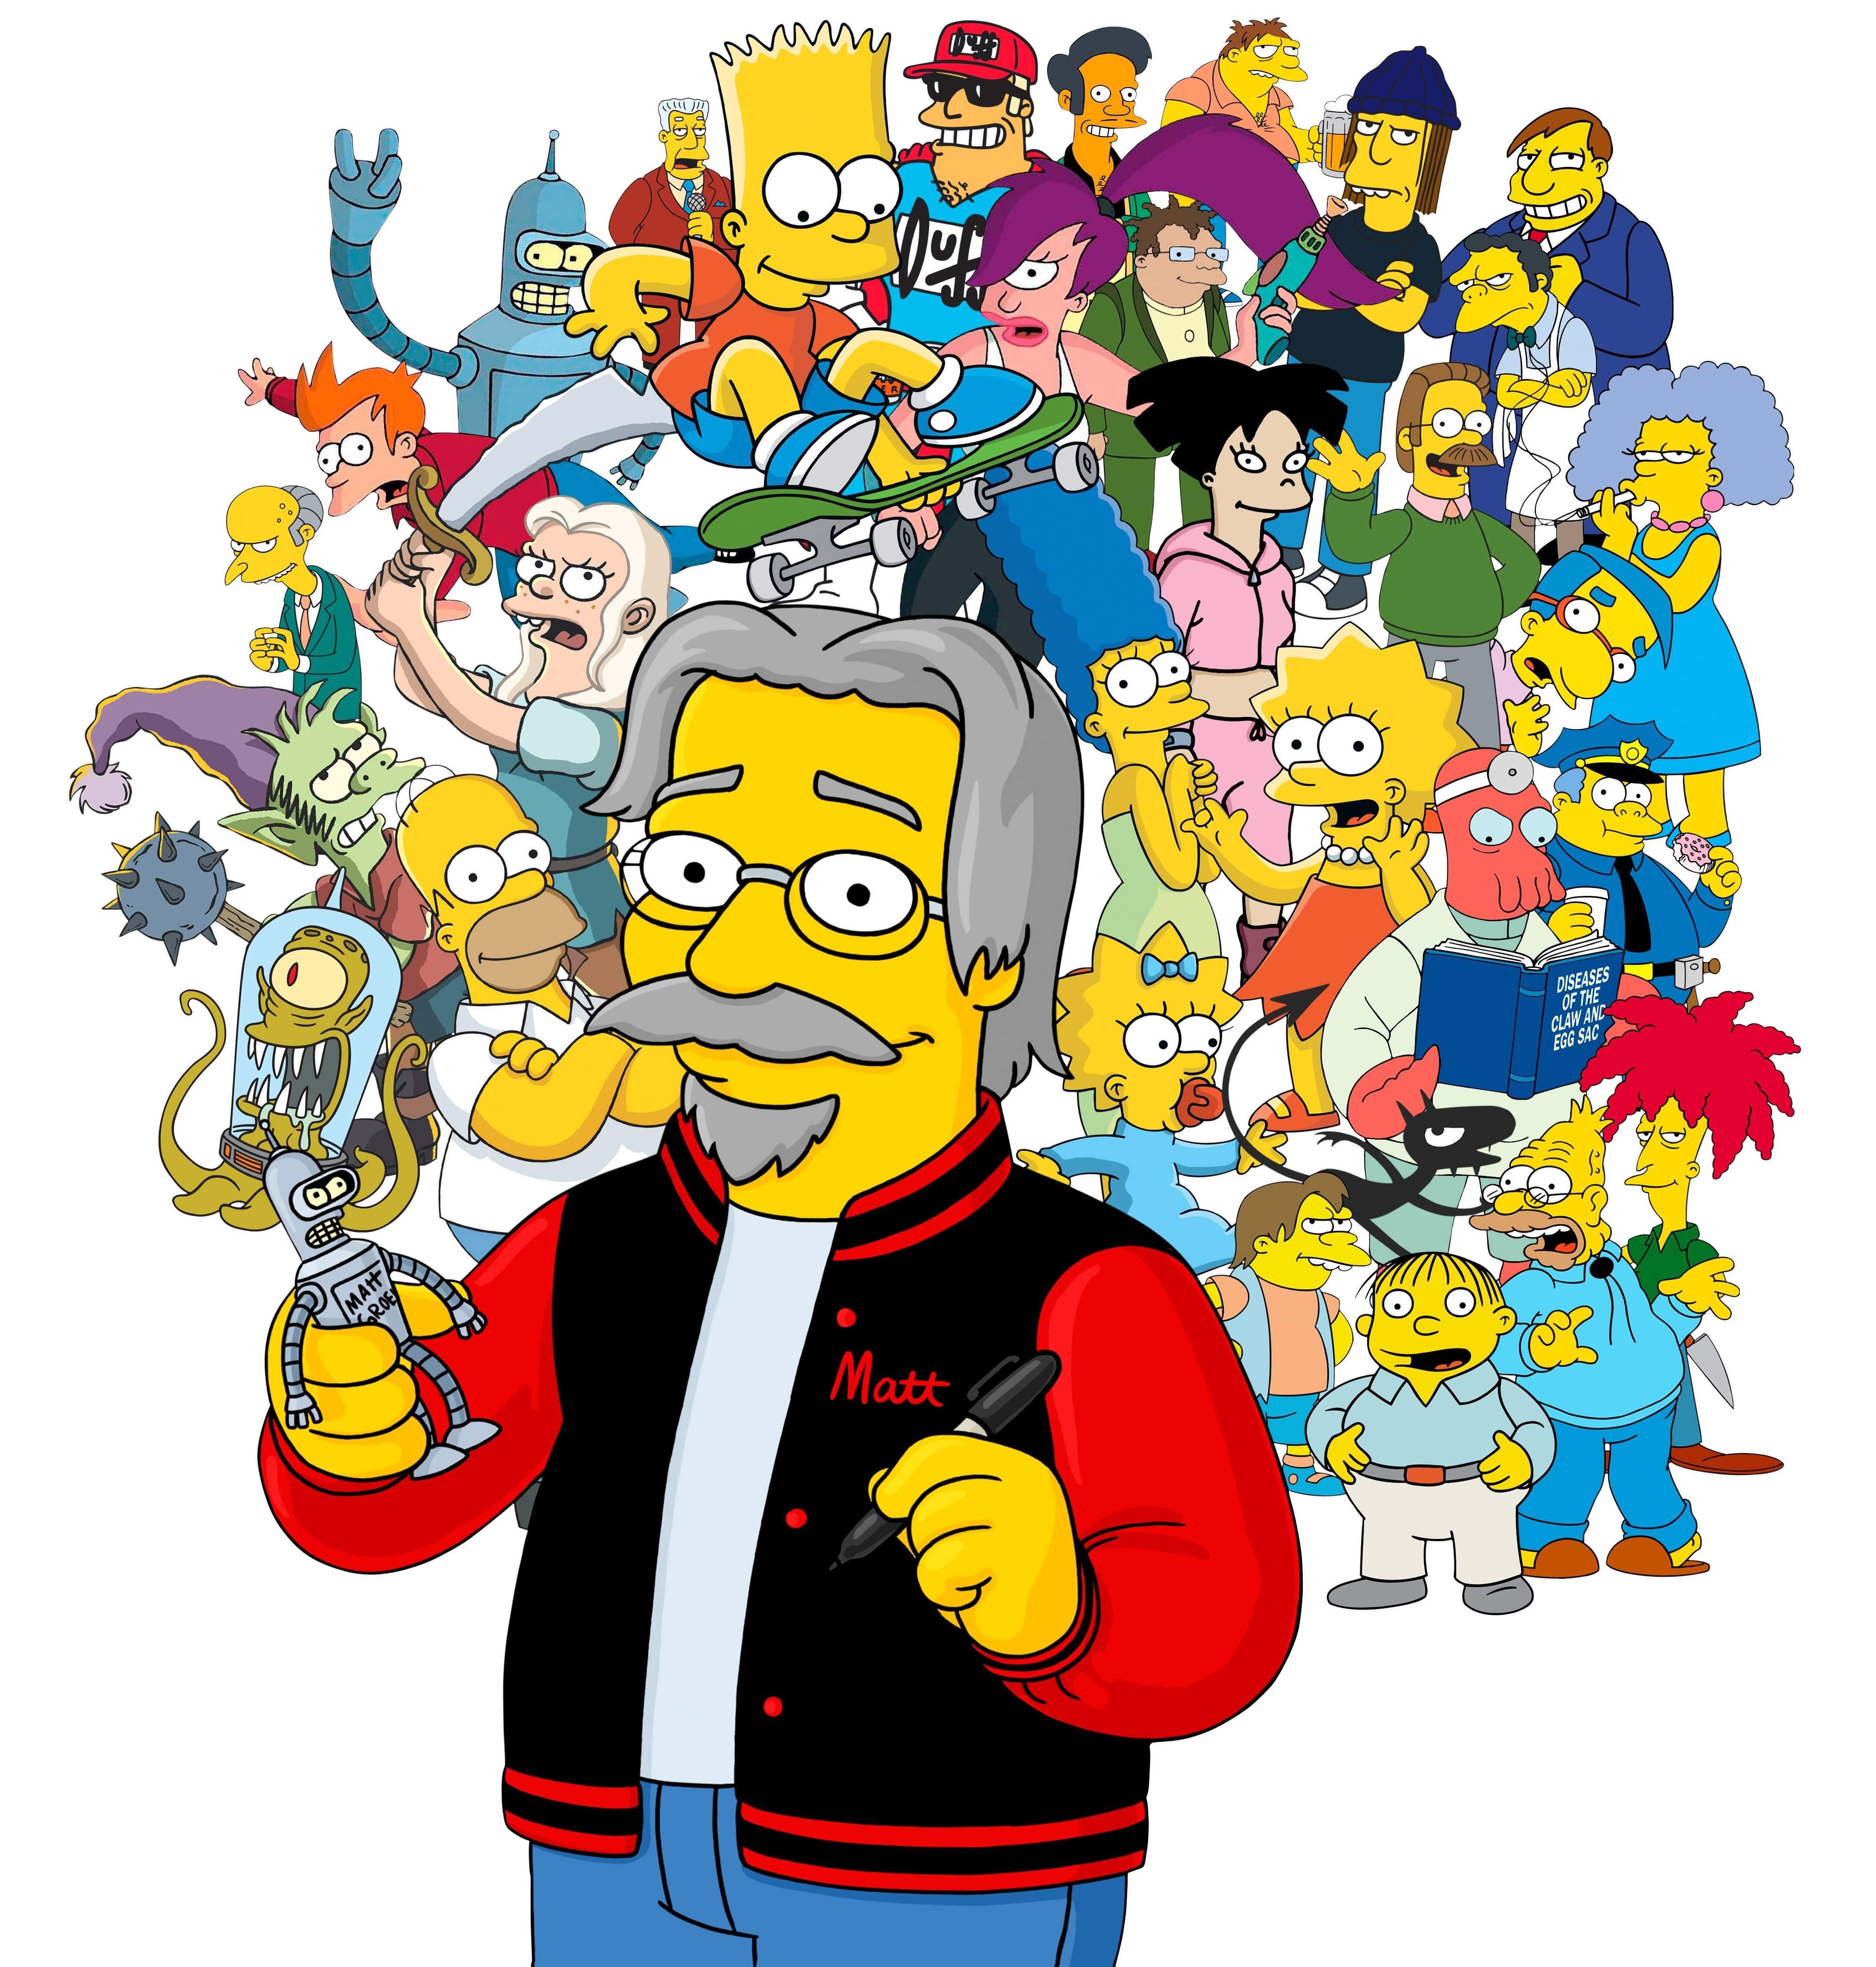 Caricatura de Matt Groening rodeado de los personajes icónicos de sus series: Los Simpsons, Futurama y Desencanto. En el centro, se encuentra Matt Groening, caricaturizado al estilo de Los Simpsons, con su característica cabeza amarilla y ojos saltones. A su alrededor, se ven personajes reconocibles como Homero Simpson, Fry y la Princesa Bean. La imagen representa la creatividad y genialidad de Groening en la creación de universos animados